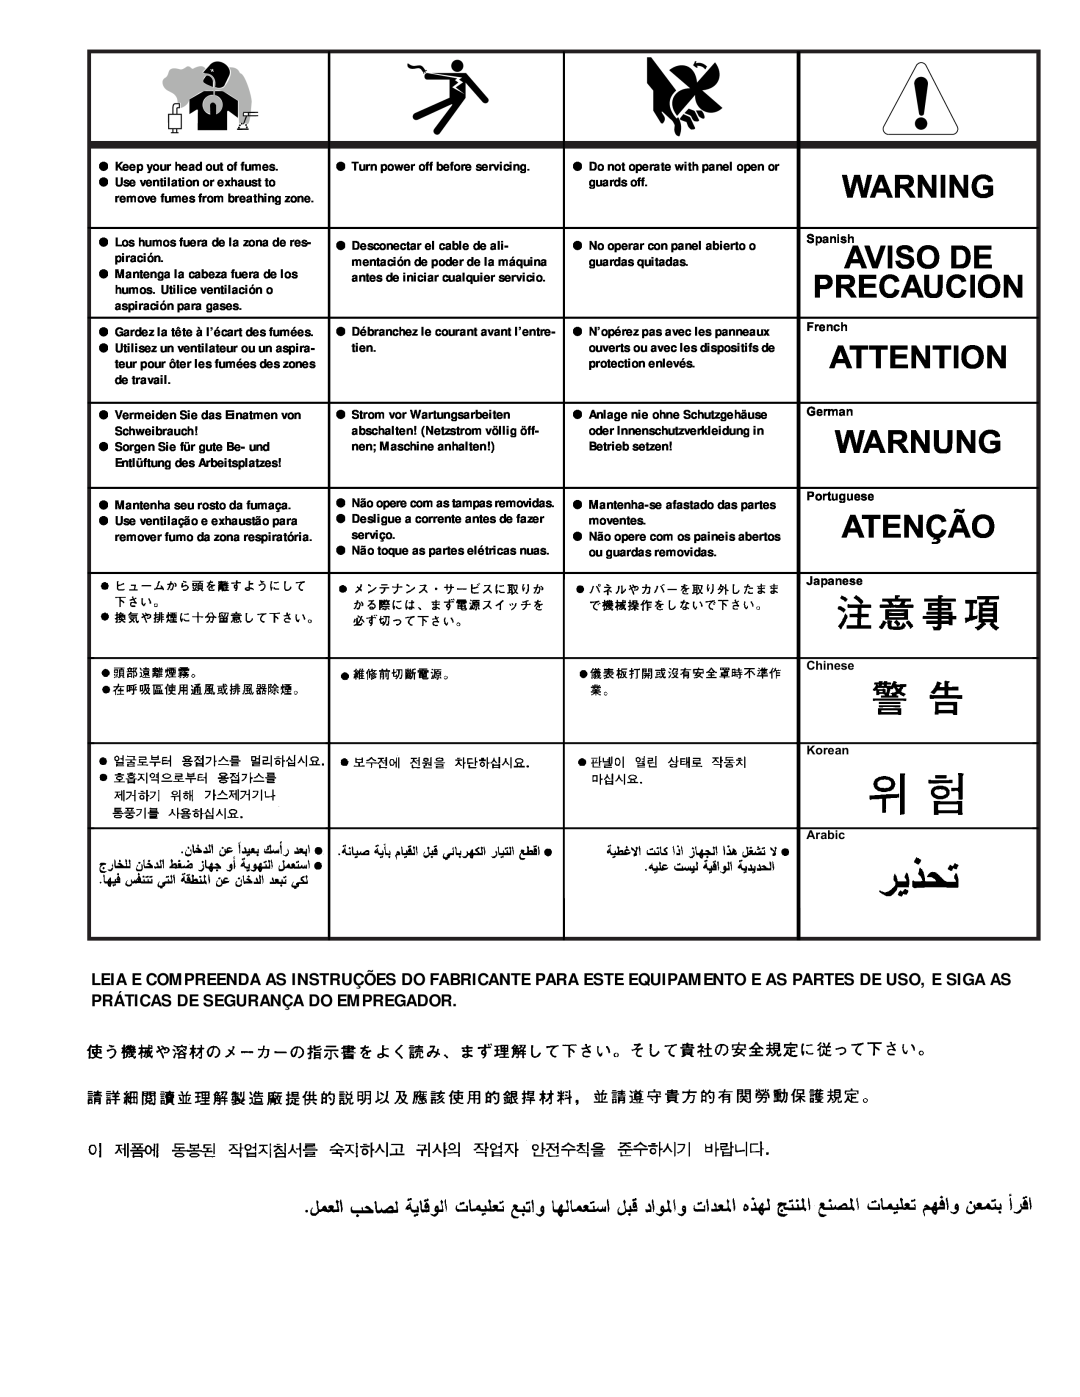 Lincoln Electric IM438-B manual Warnung, Atenção, Precaucion, Aviso De 